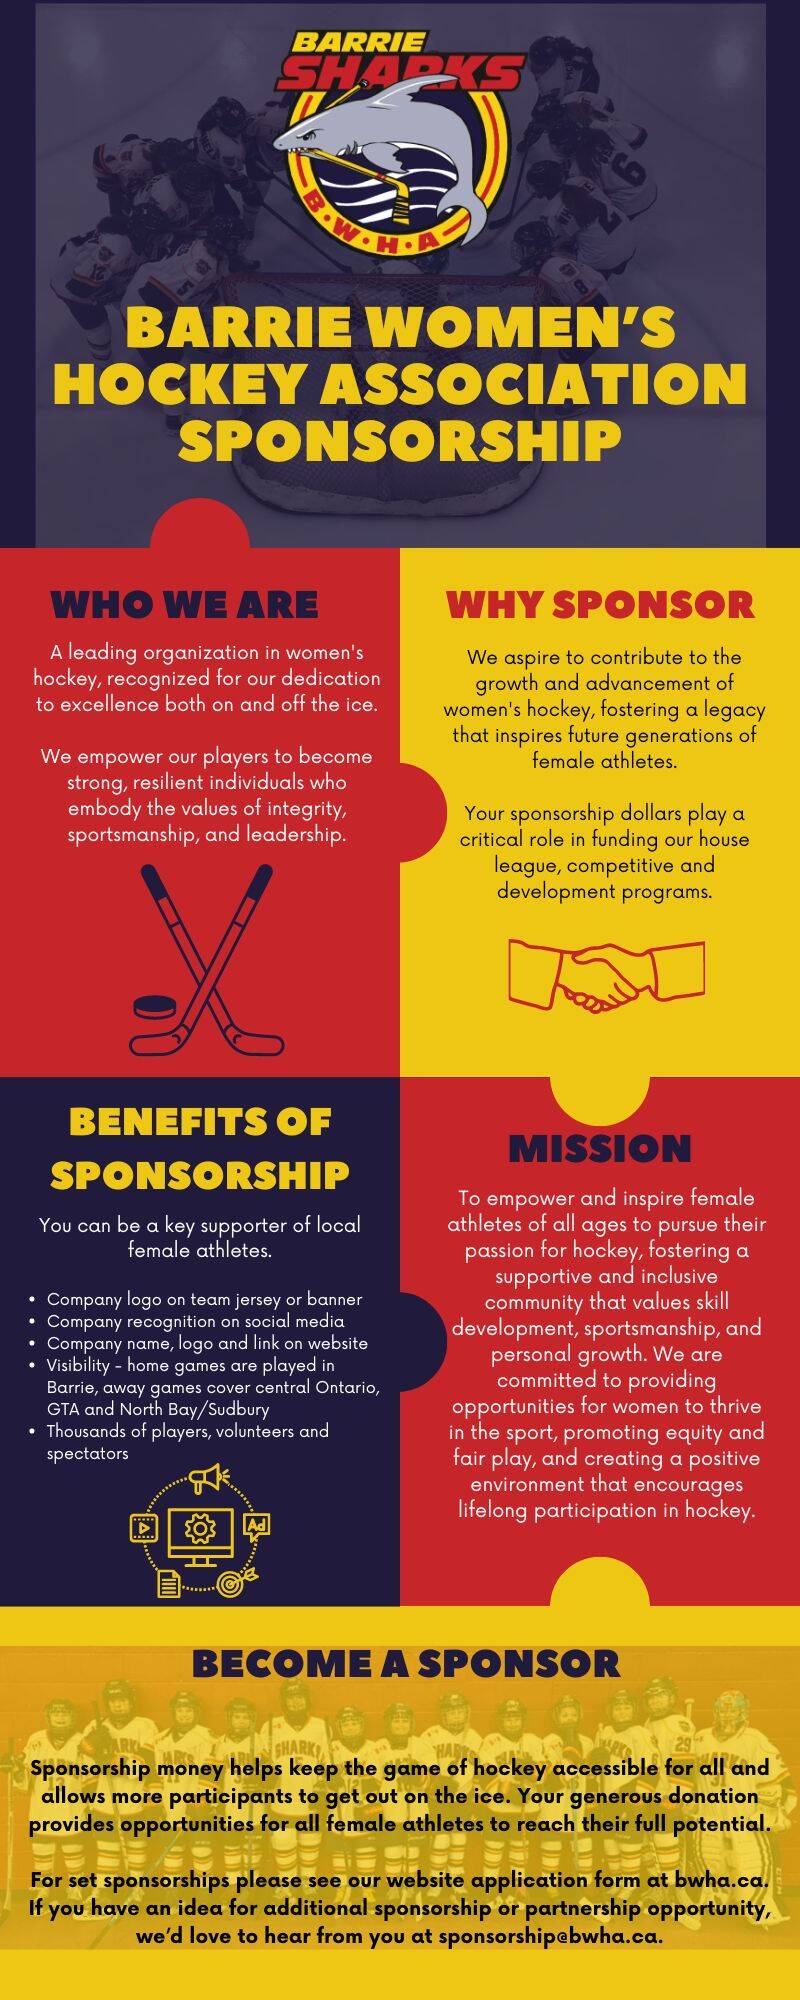 BWHA_Sponsorship_Infographic.jpg